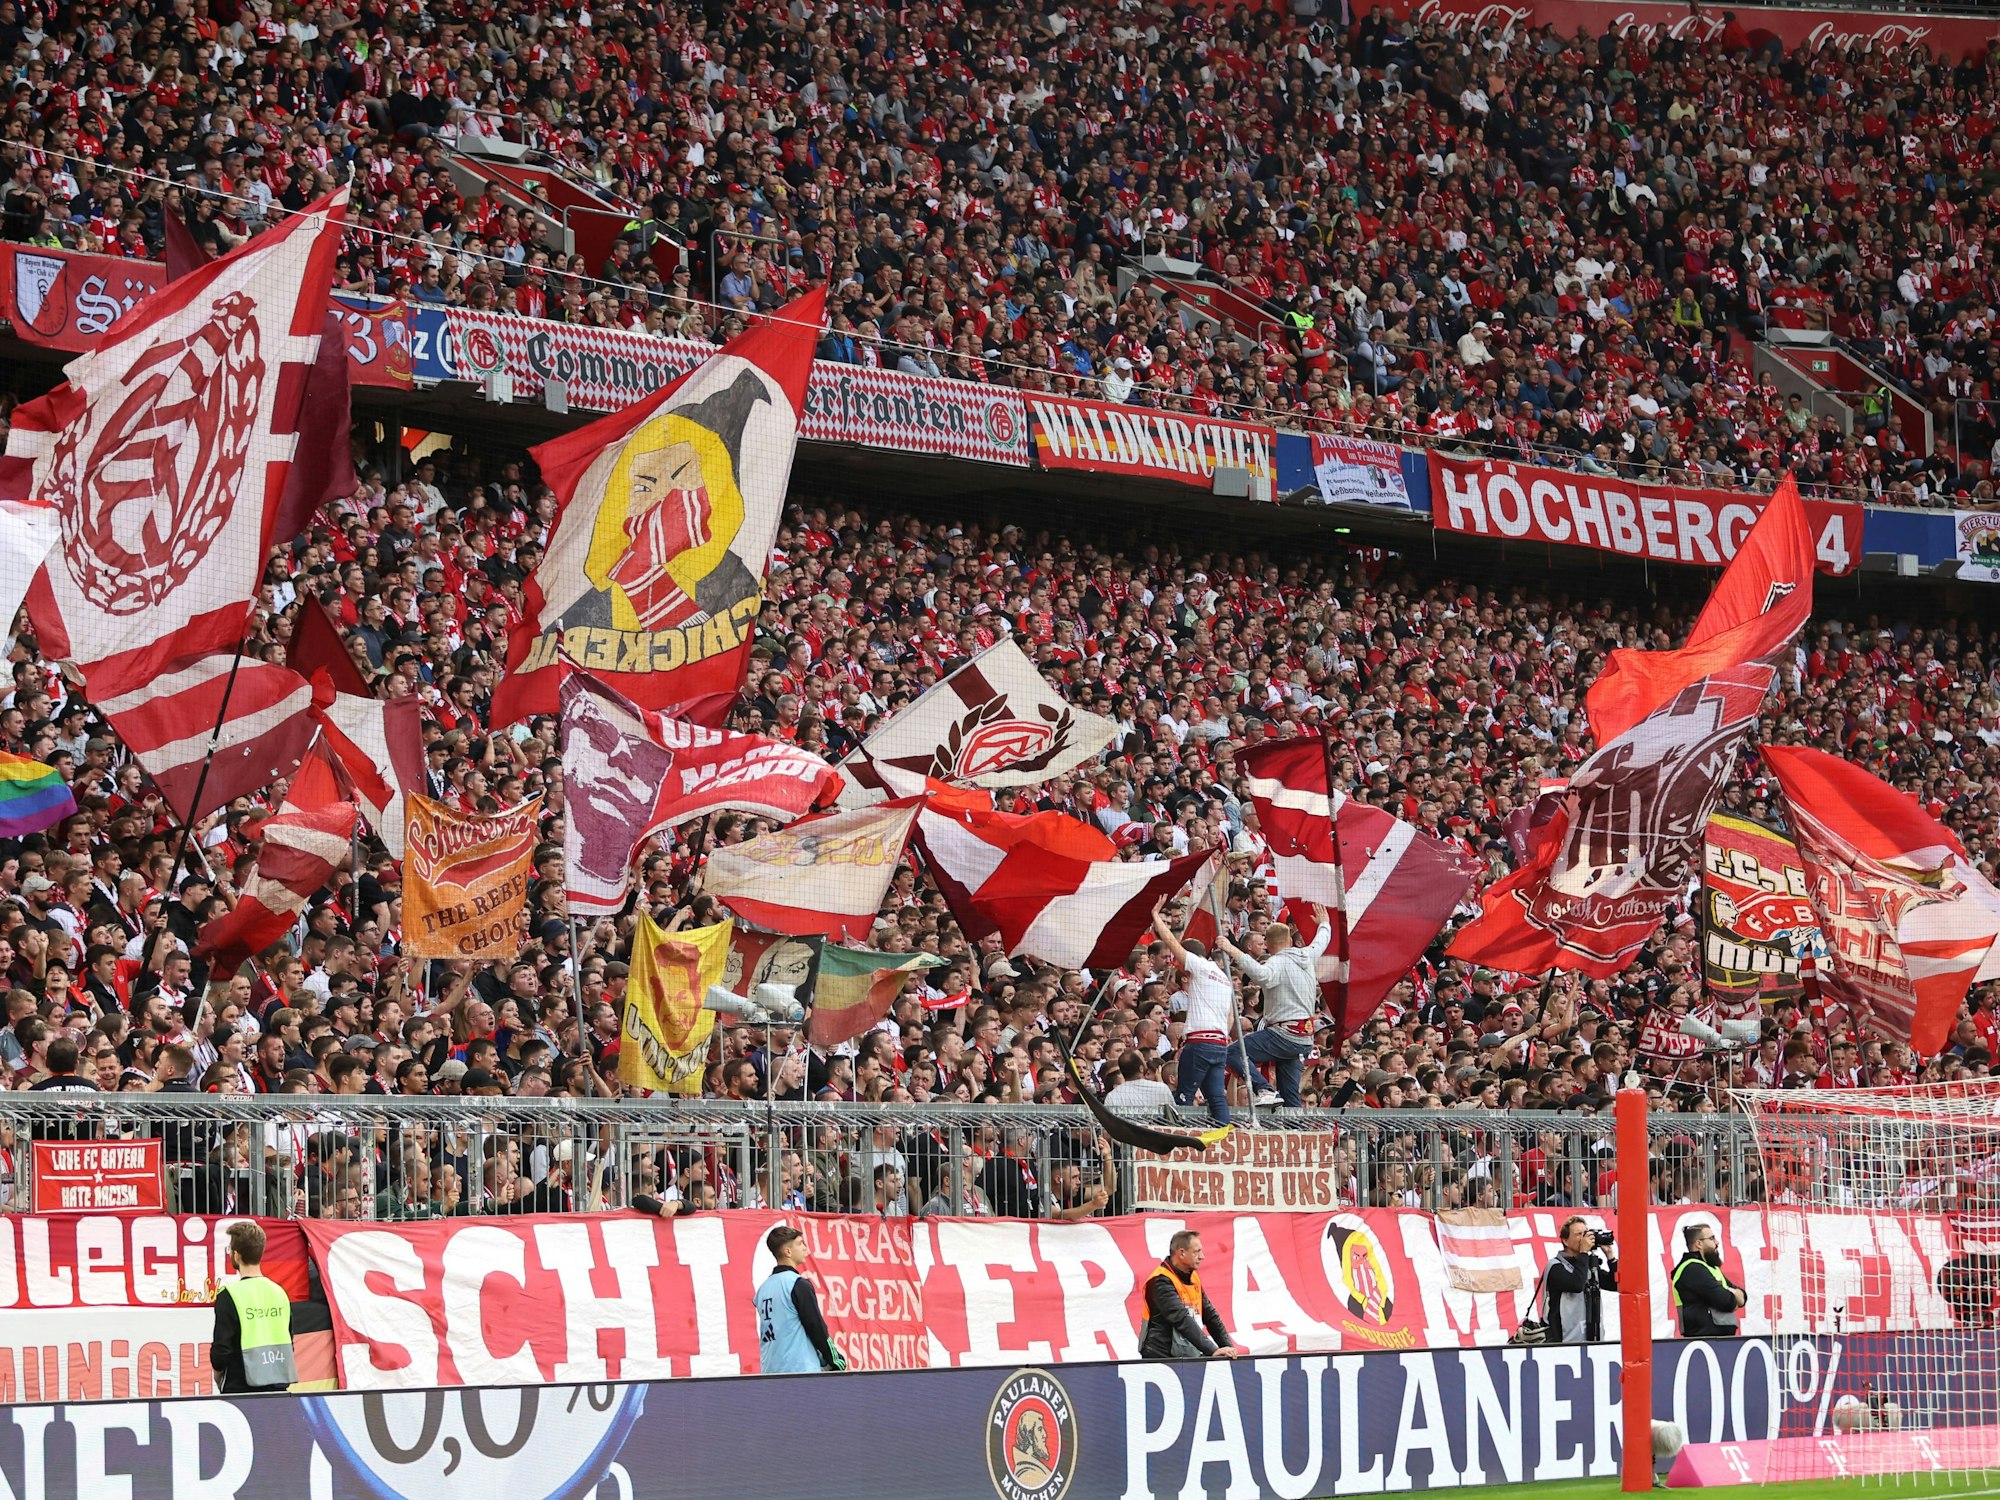 Hinter einer Paulaner 0,0% Werbebande steht die aktive Fanszene des FC Bayern München.